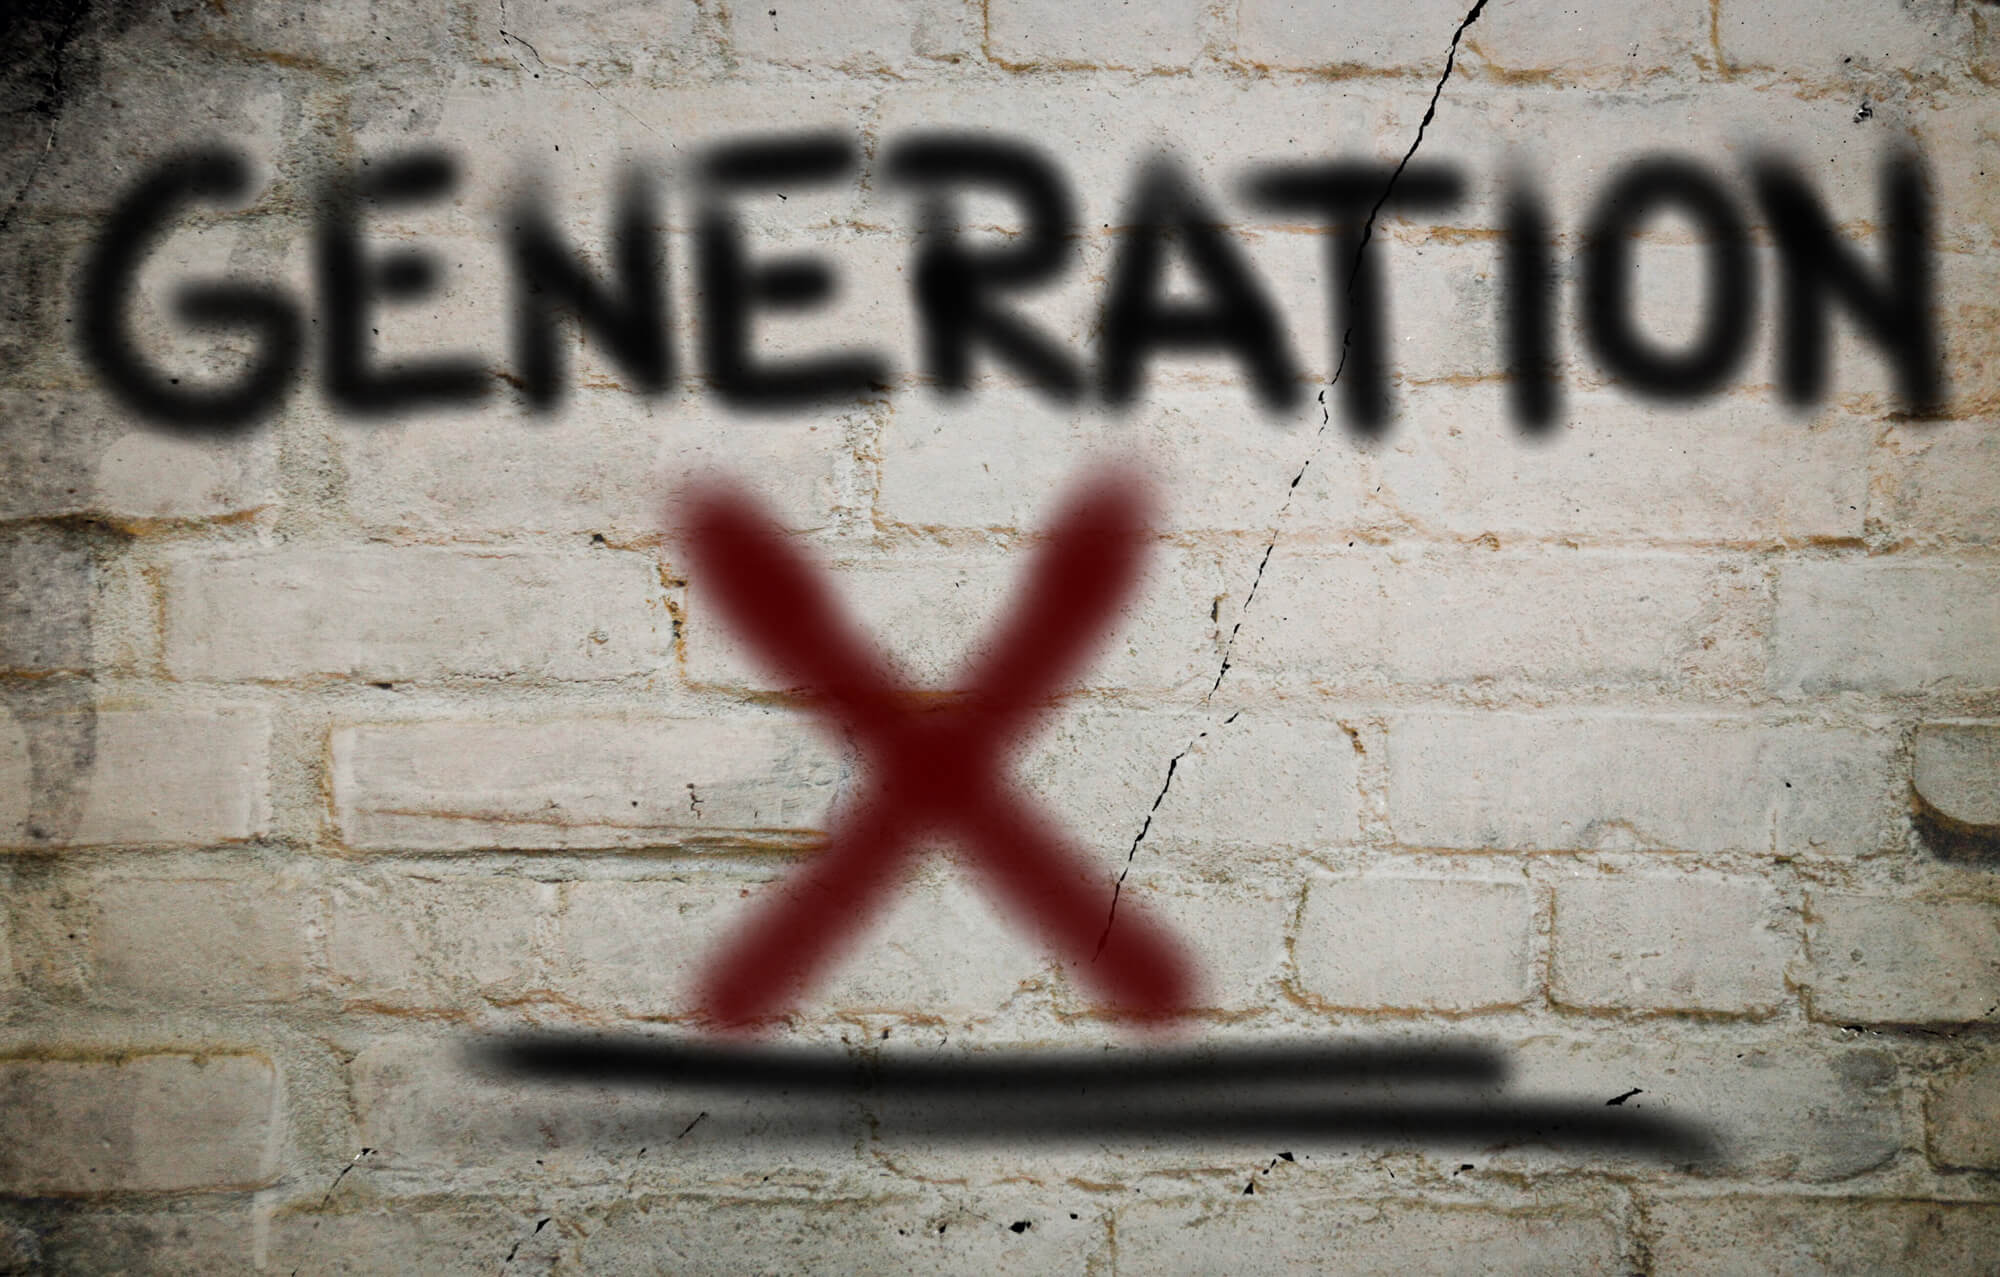 Generation X graffiti